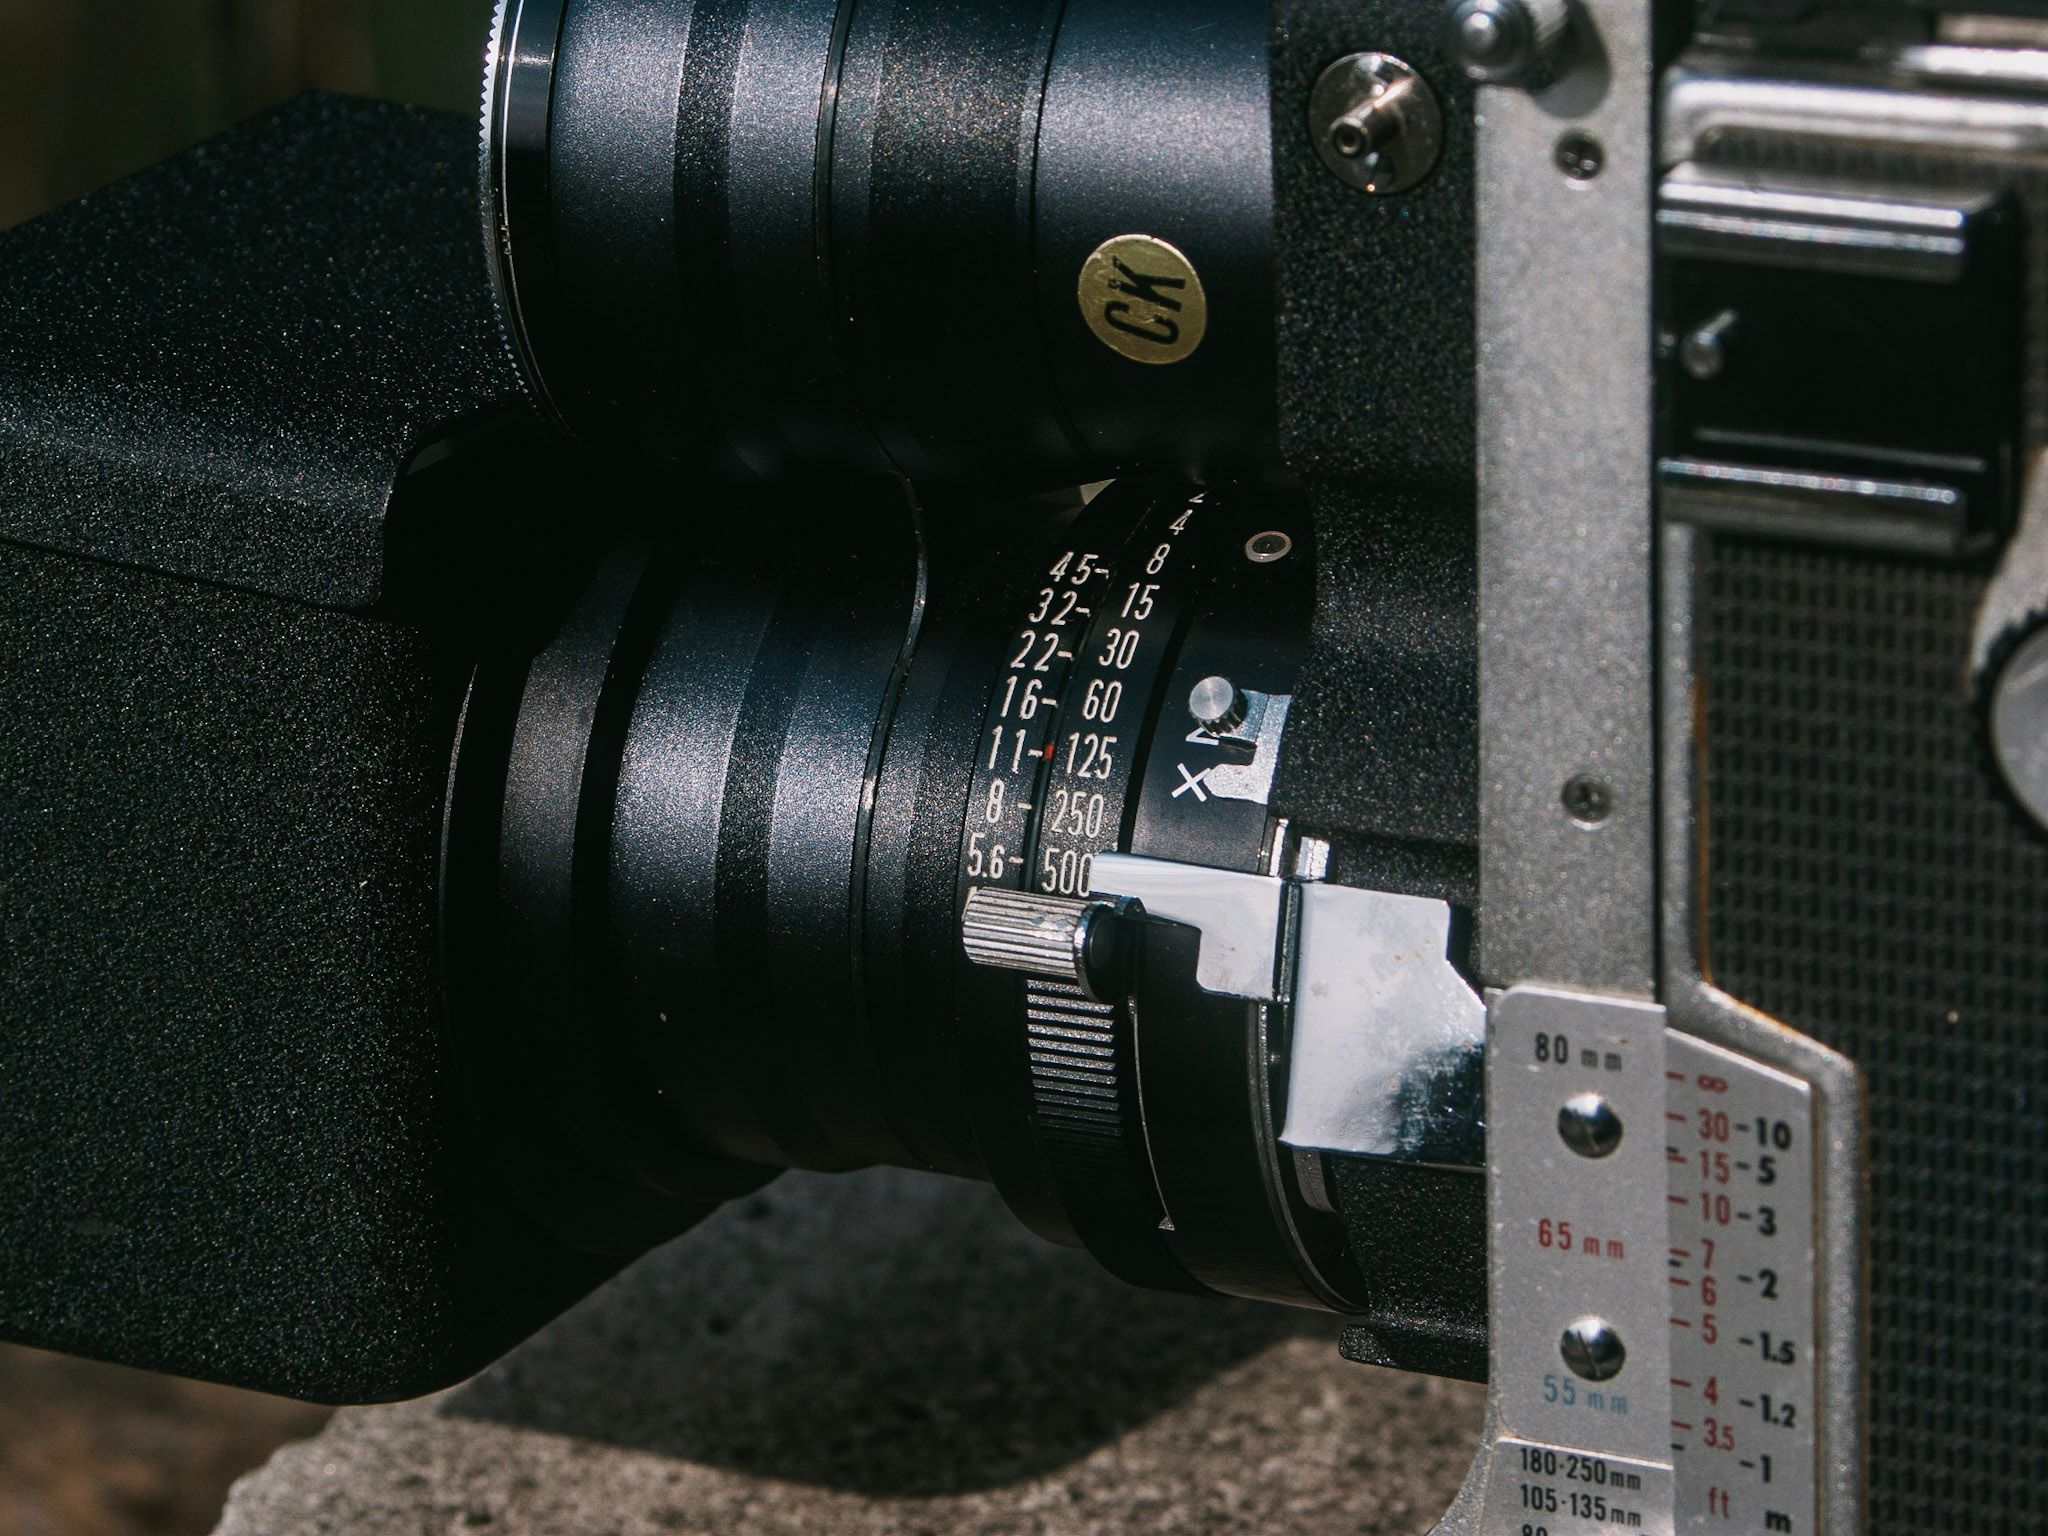 Mamiya C System Review Part 3: Mamiya Super-Sekor 180mm f4.5 - 50mmF2